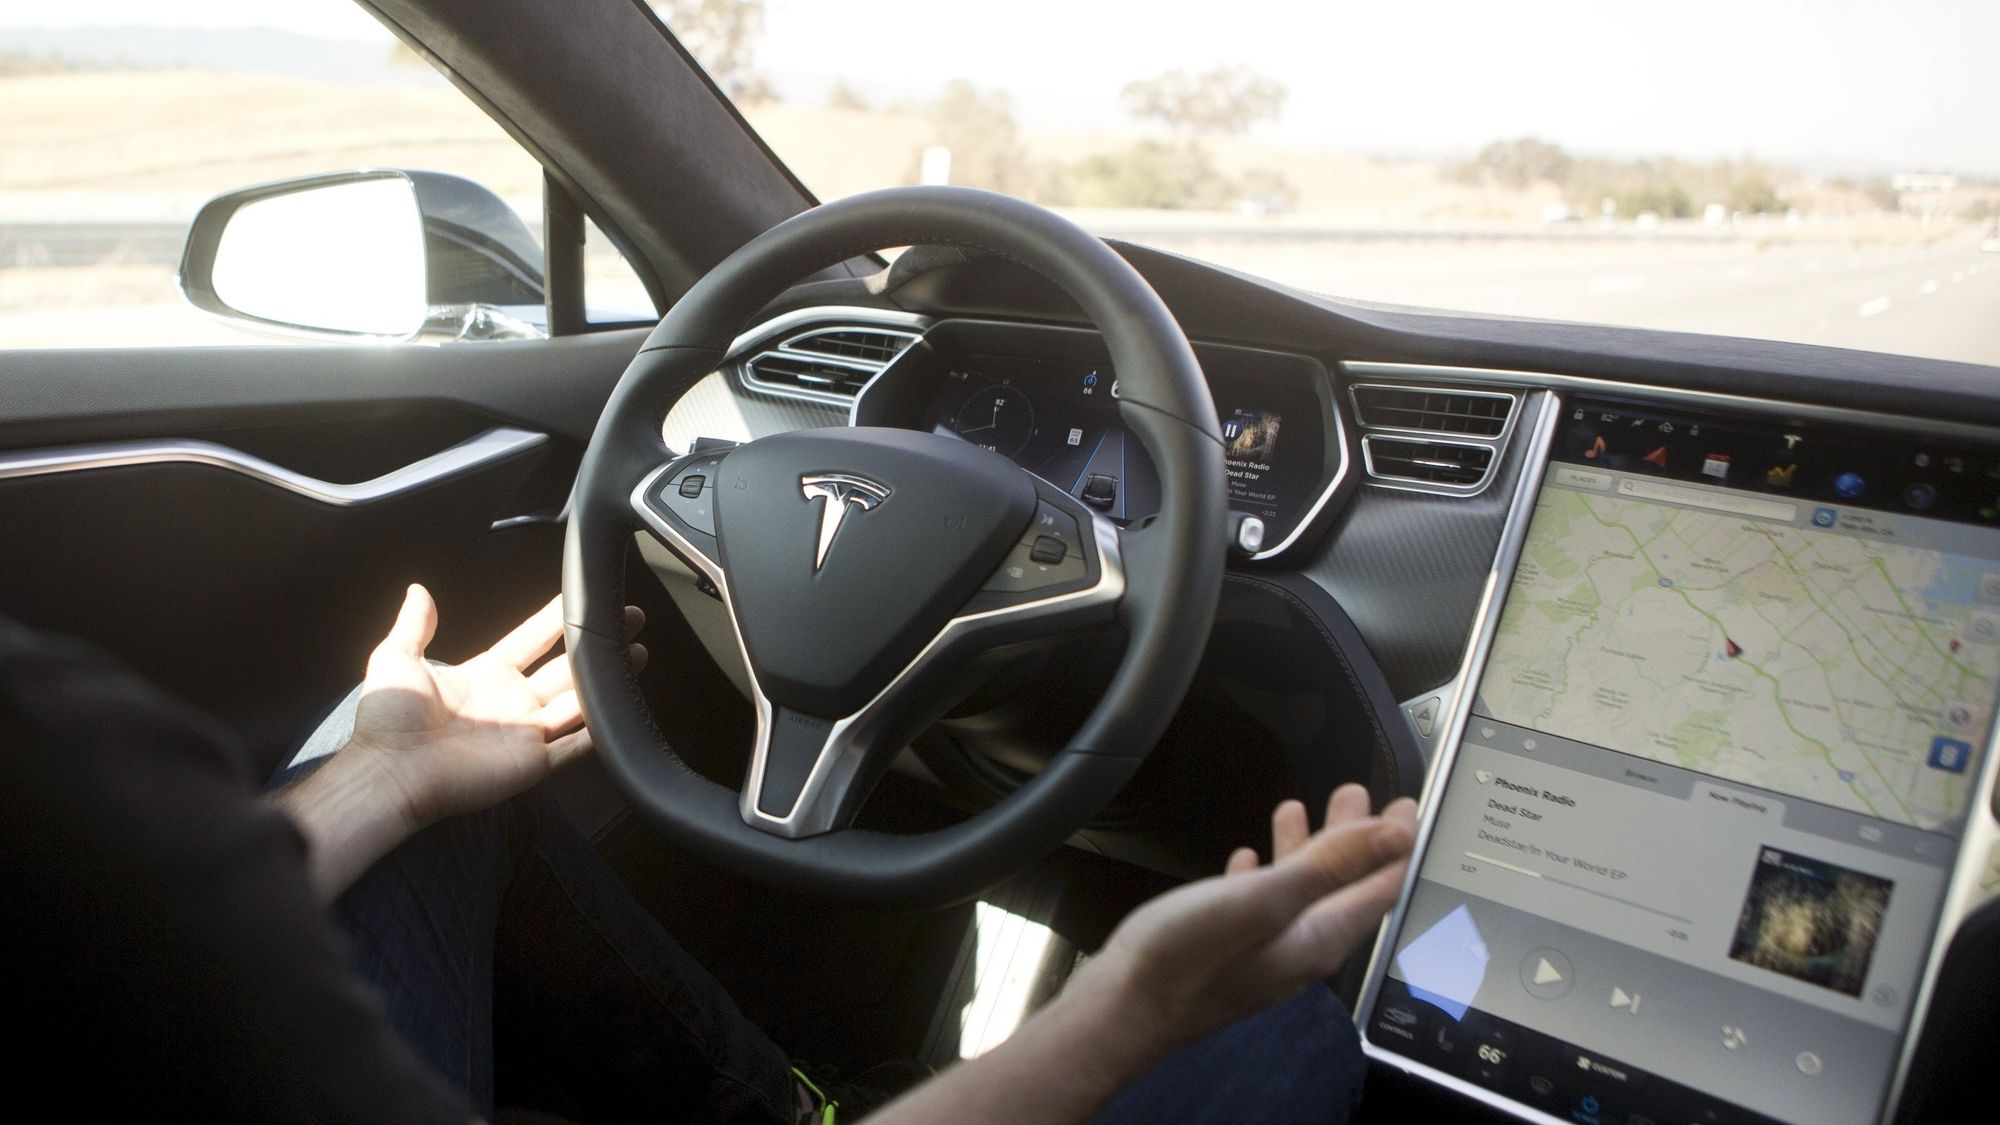 Tesla Autopilot frikjent etter dødsulykke - Tu.no